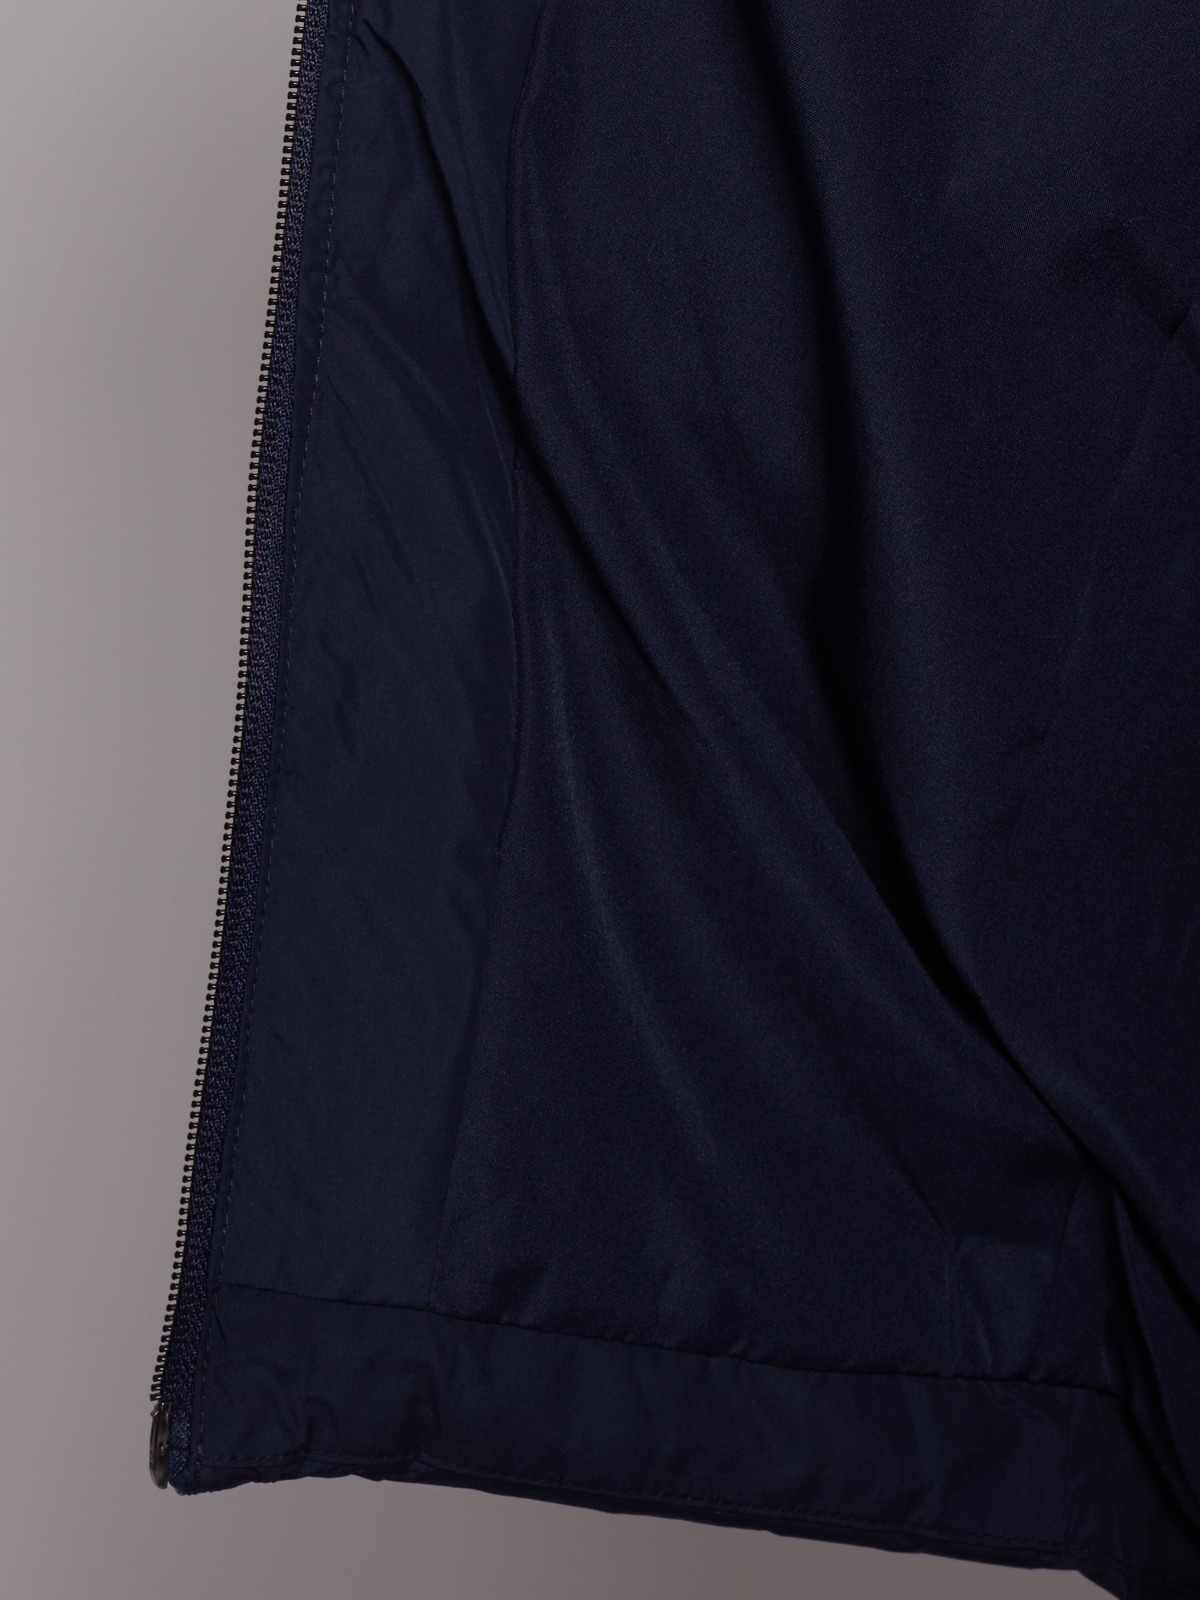 Утеплённое пальто объёмного силуэта zolla 022335202084, цвет синий, размер S - фото 6